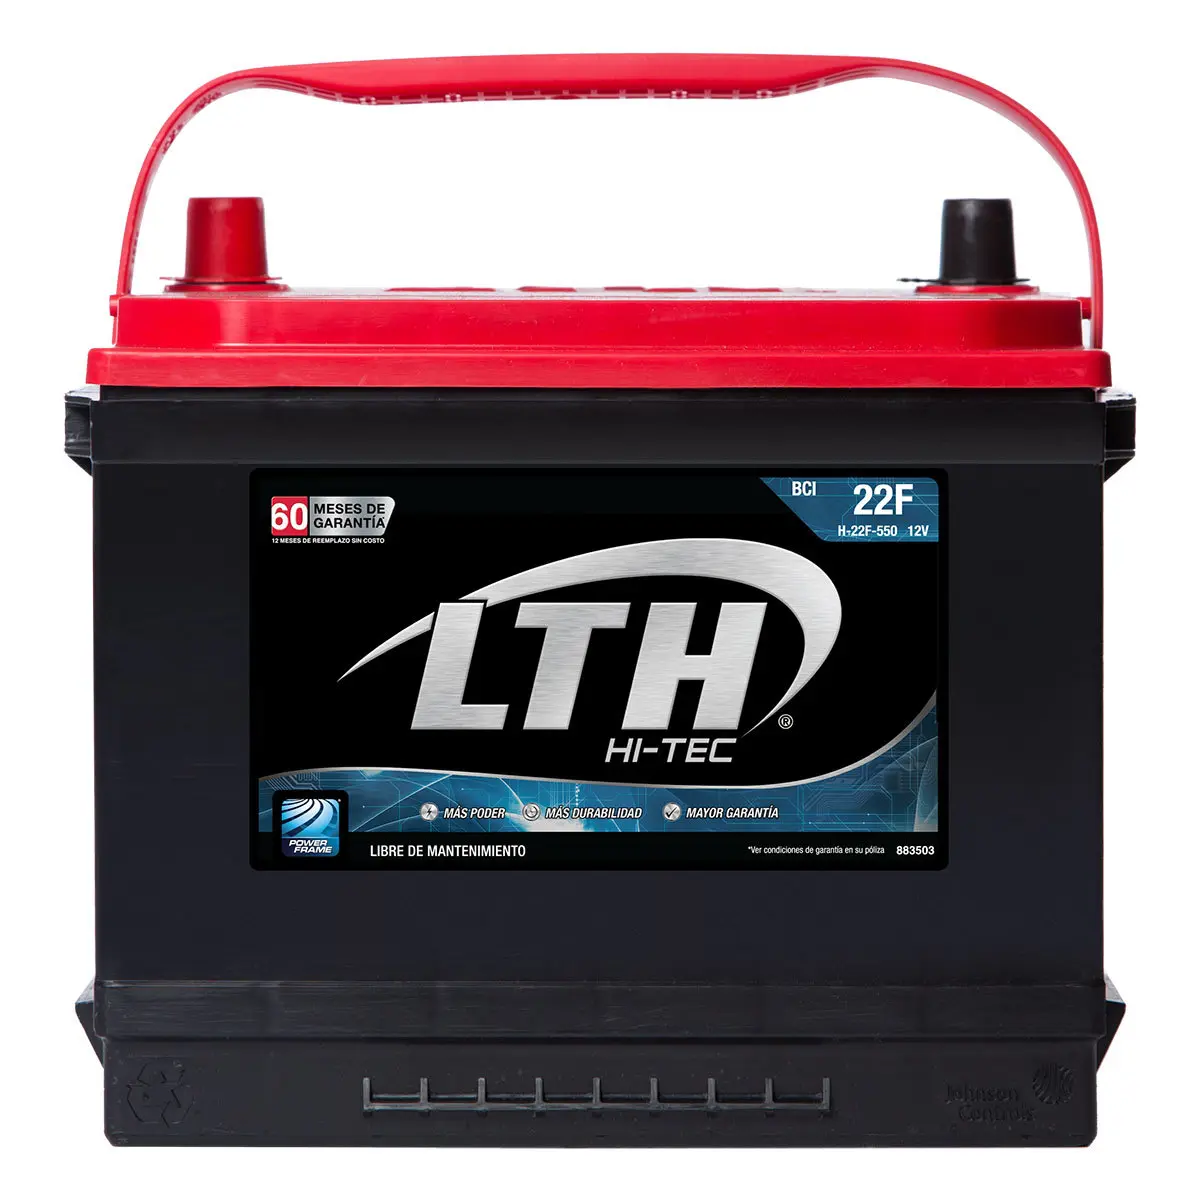 amperaje bateria chevrolet tracker - Cuánto carga una Chevrolet Tracker